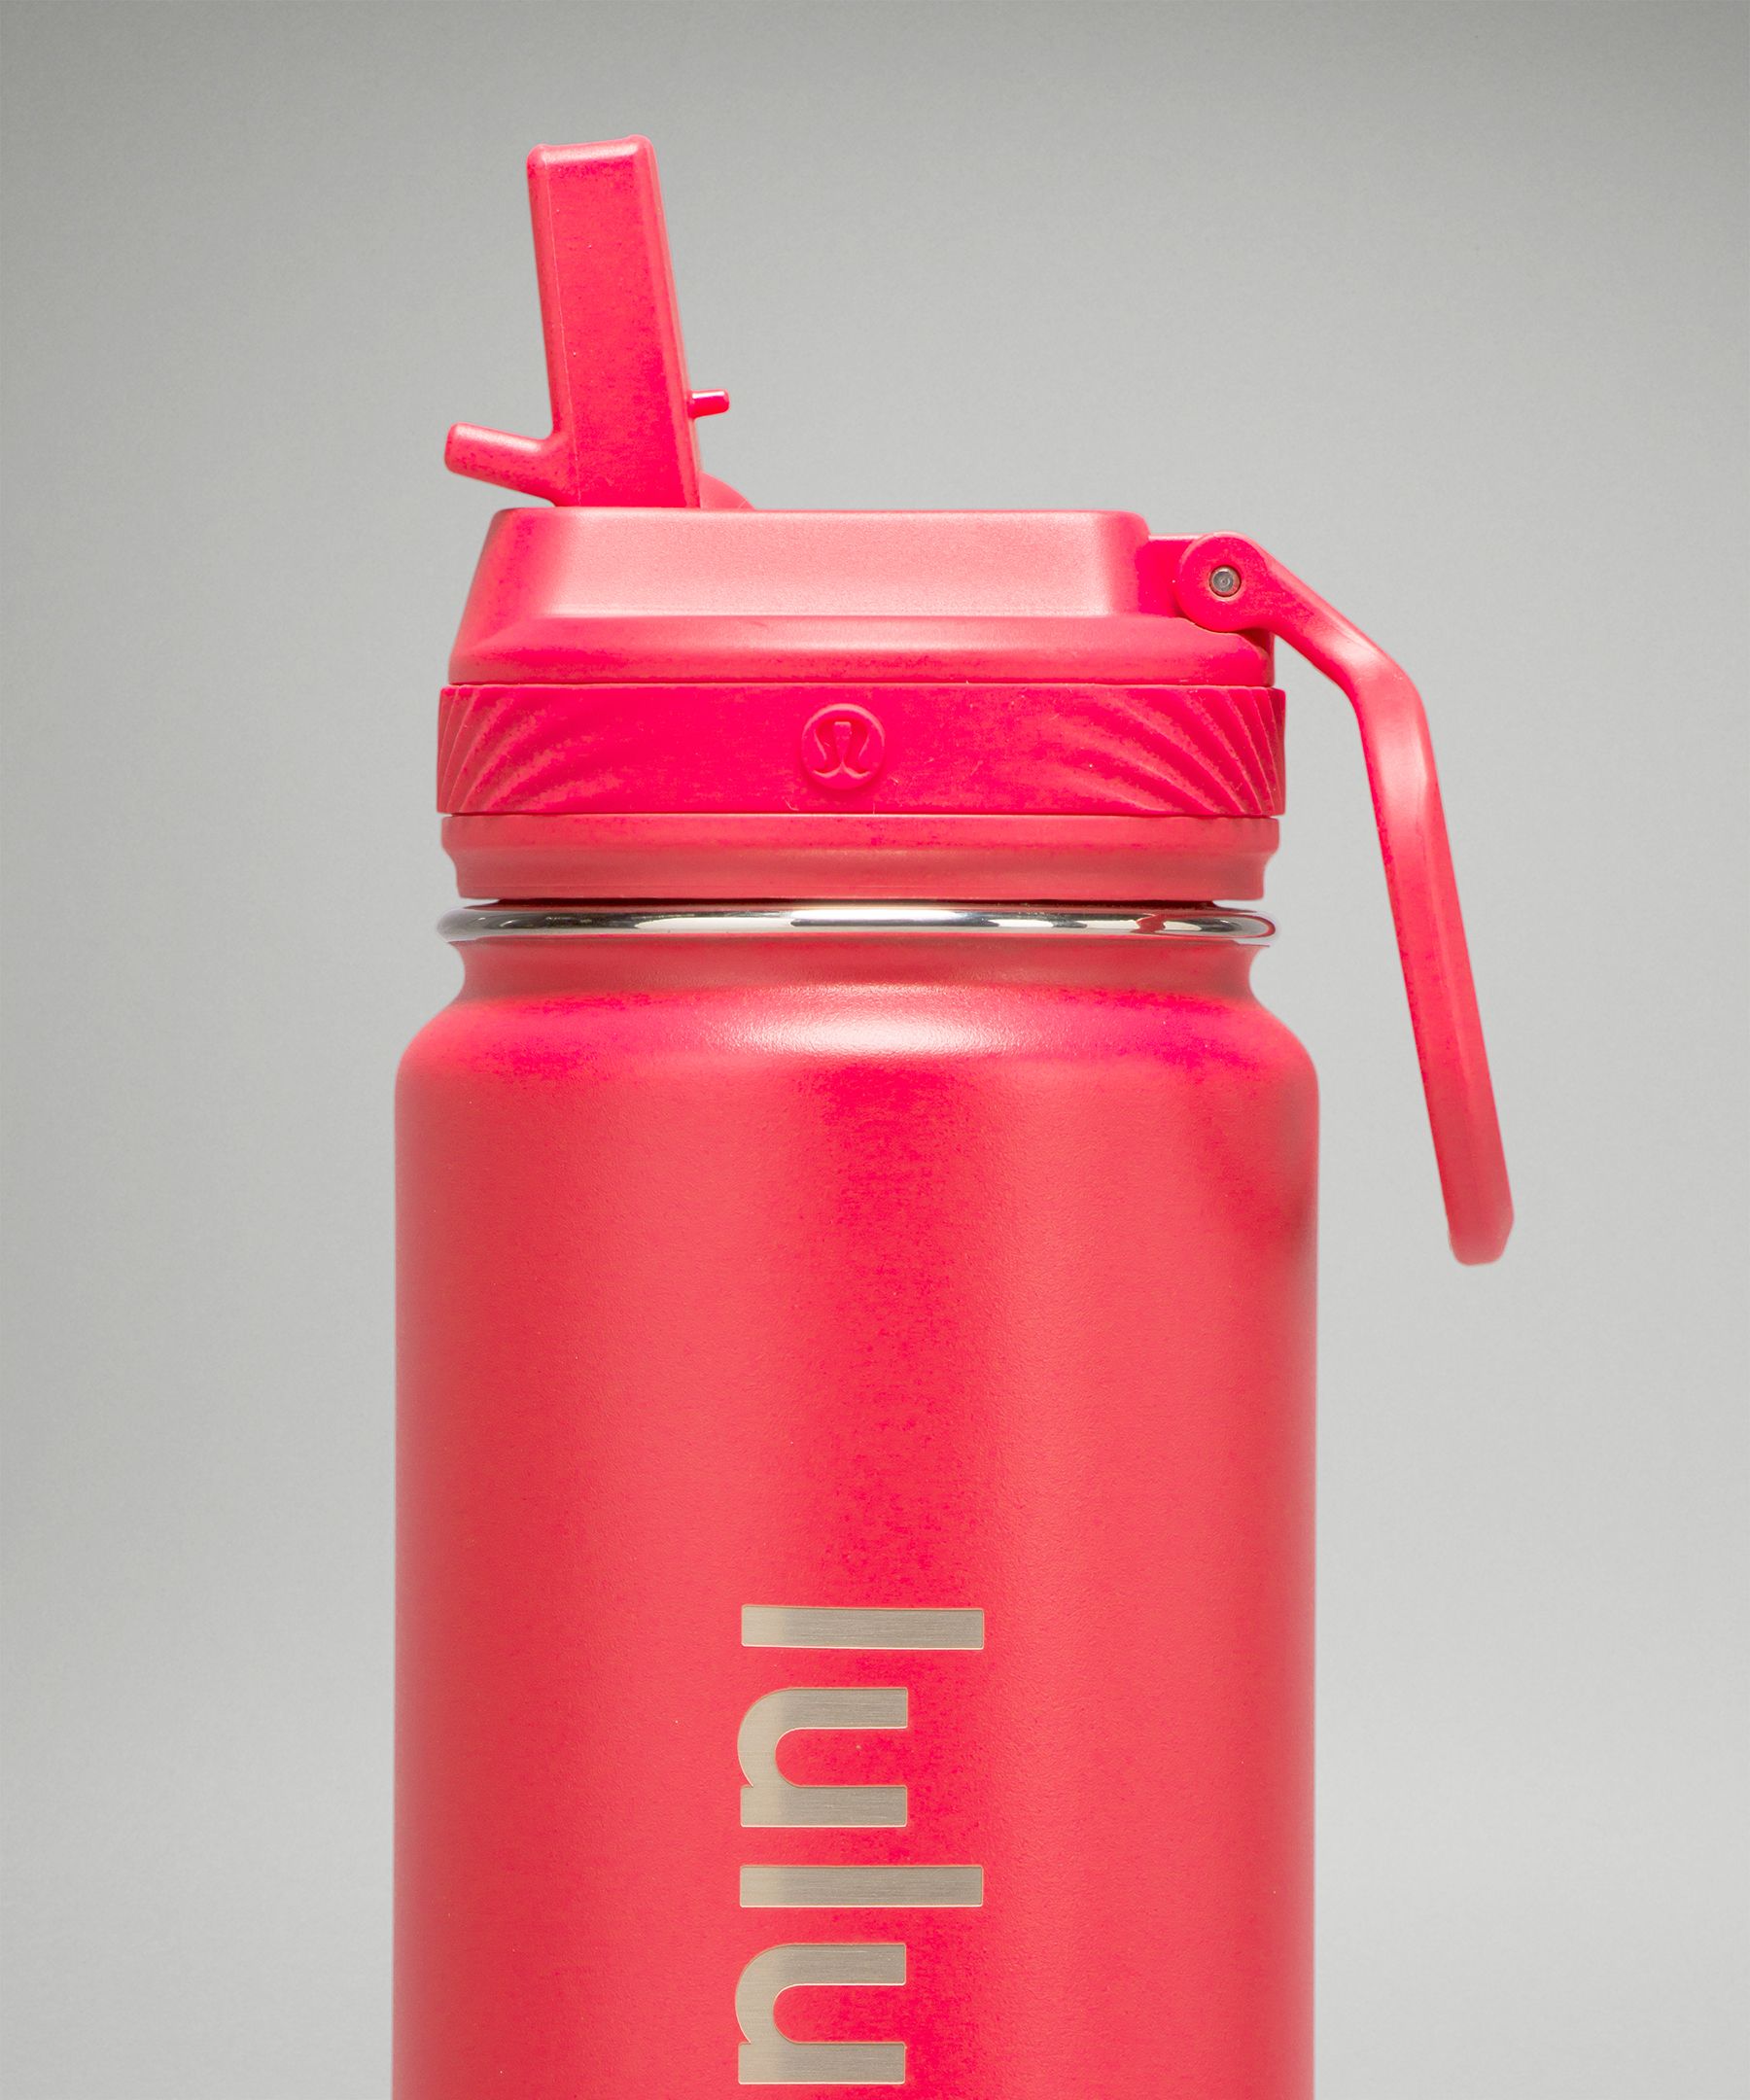 Sporty Sip Water Bottle – Ame & Lulu